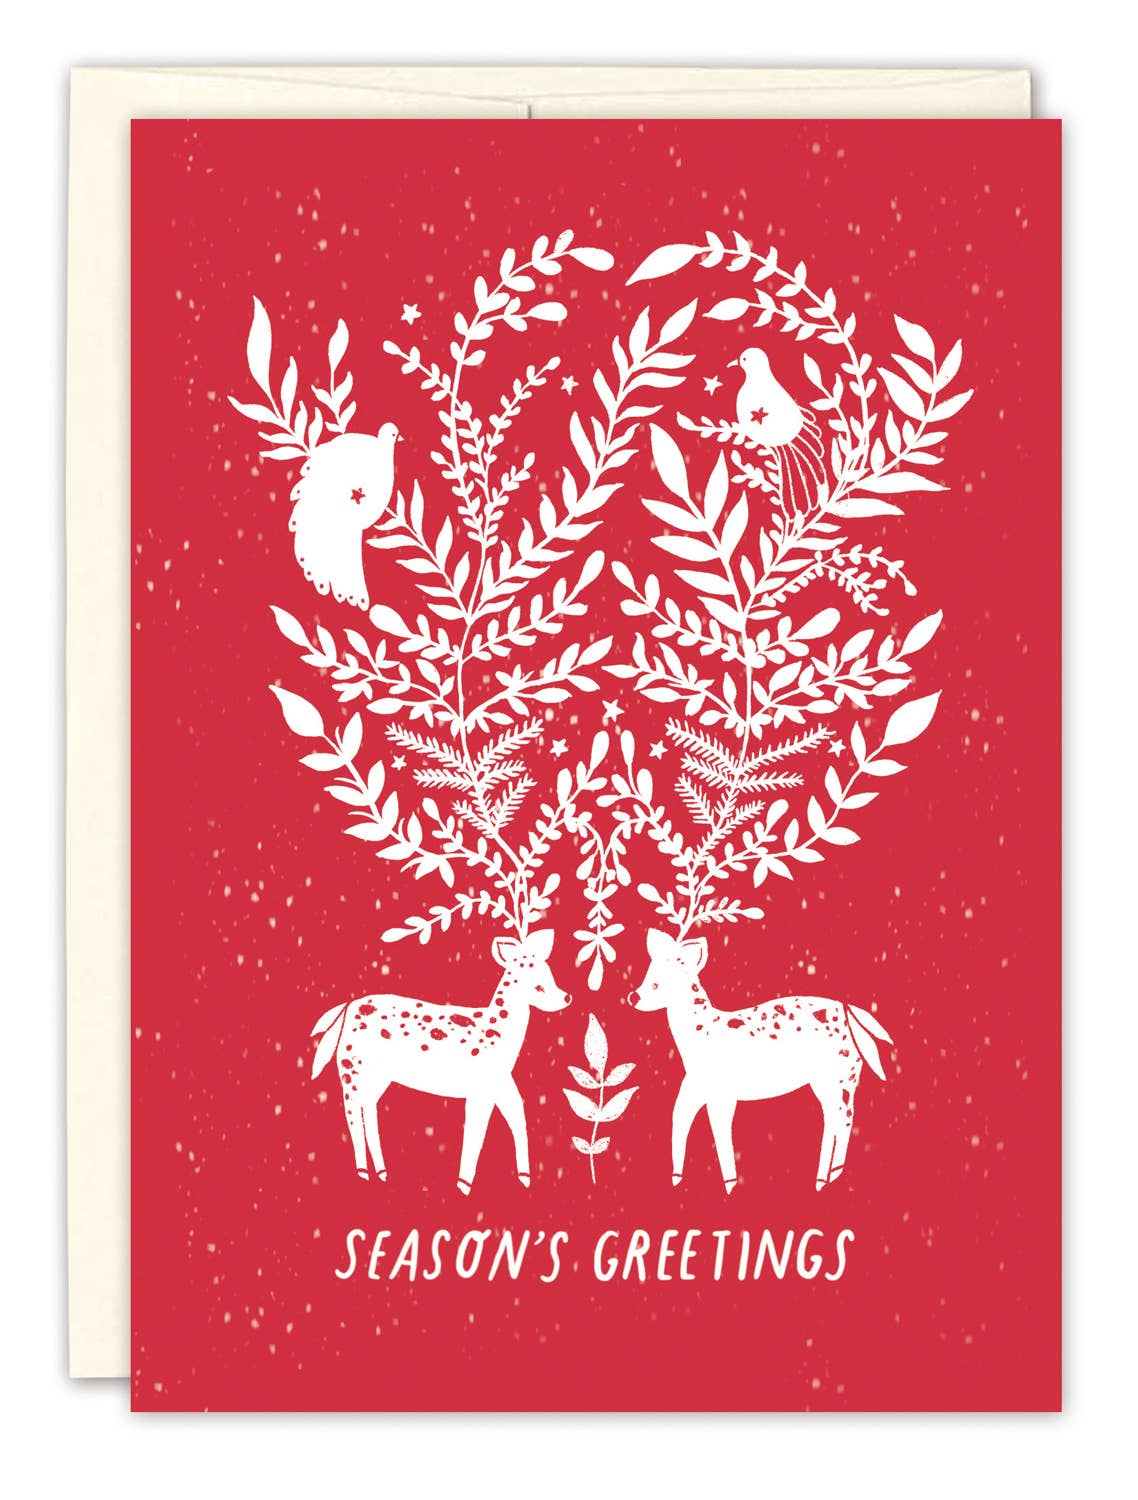 Season's Greetings Holiday Card - Spiral Circle